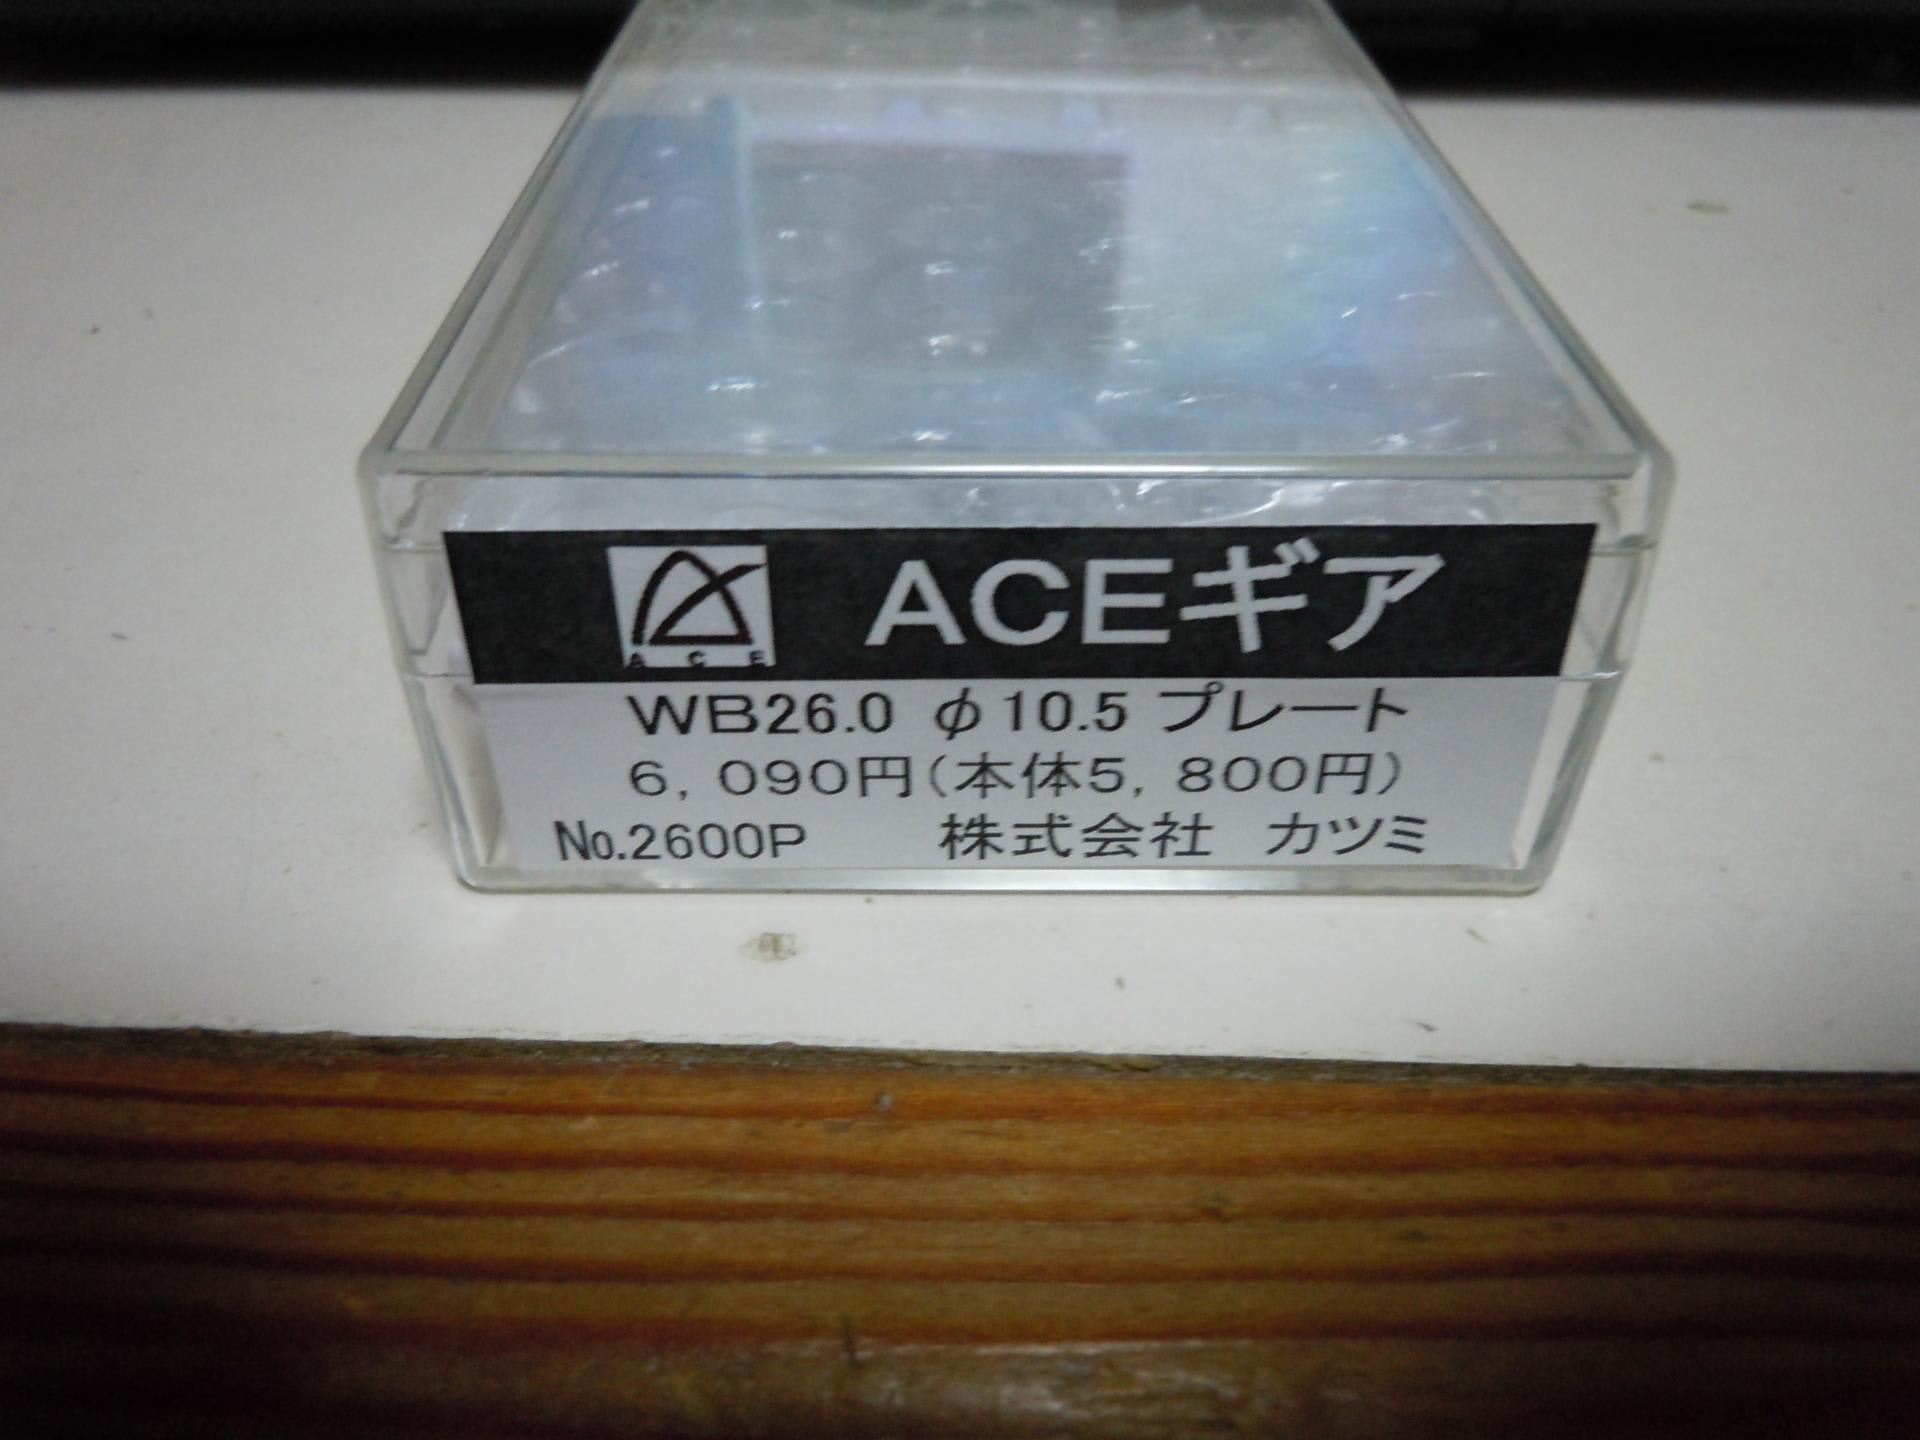 φ10.5 プレート カツミ  15-85-2600P  数量は多い ACEギア WB26.0